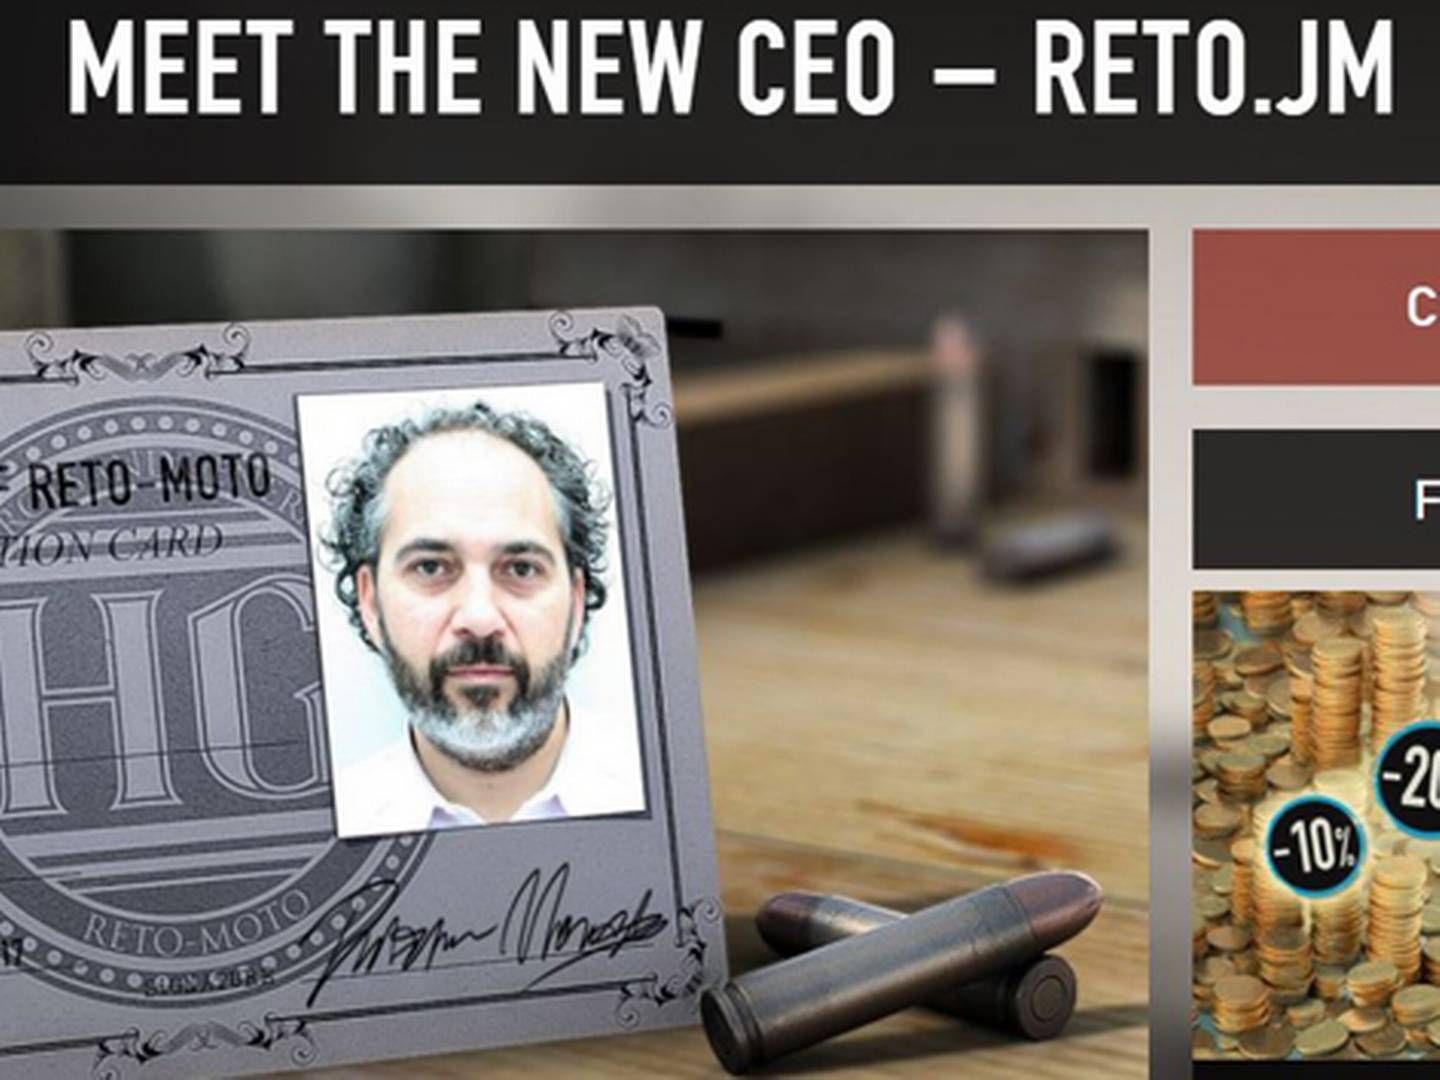 Sådan præsenterer Reto Moto deres nye topchef på deres site.